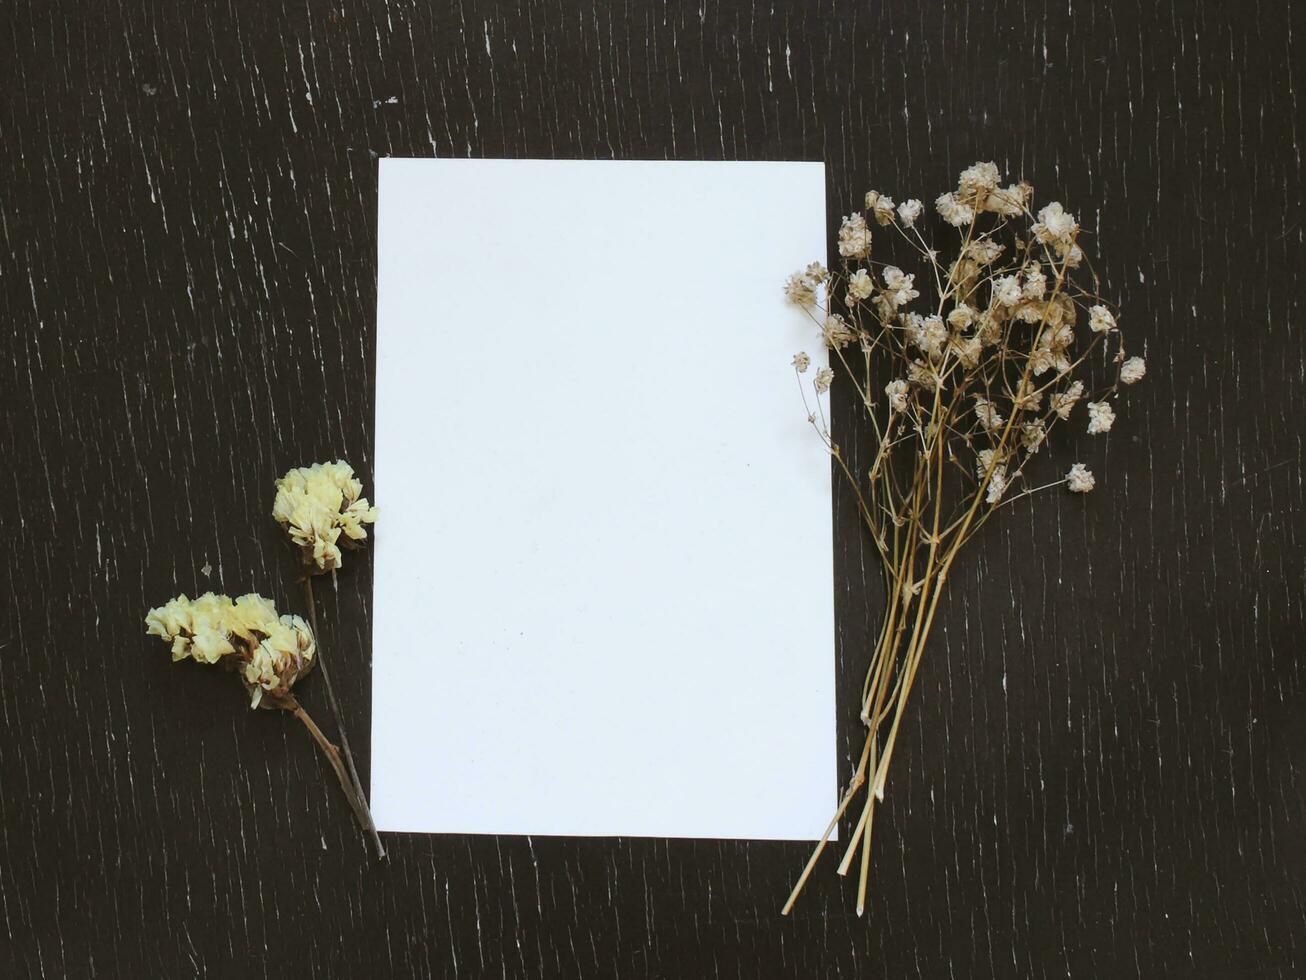 tom hälsning kort med blomma på rustik trä bakgrund för kreativ arbete design foto